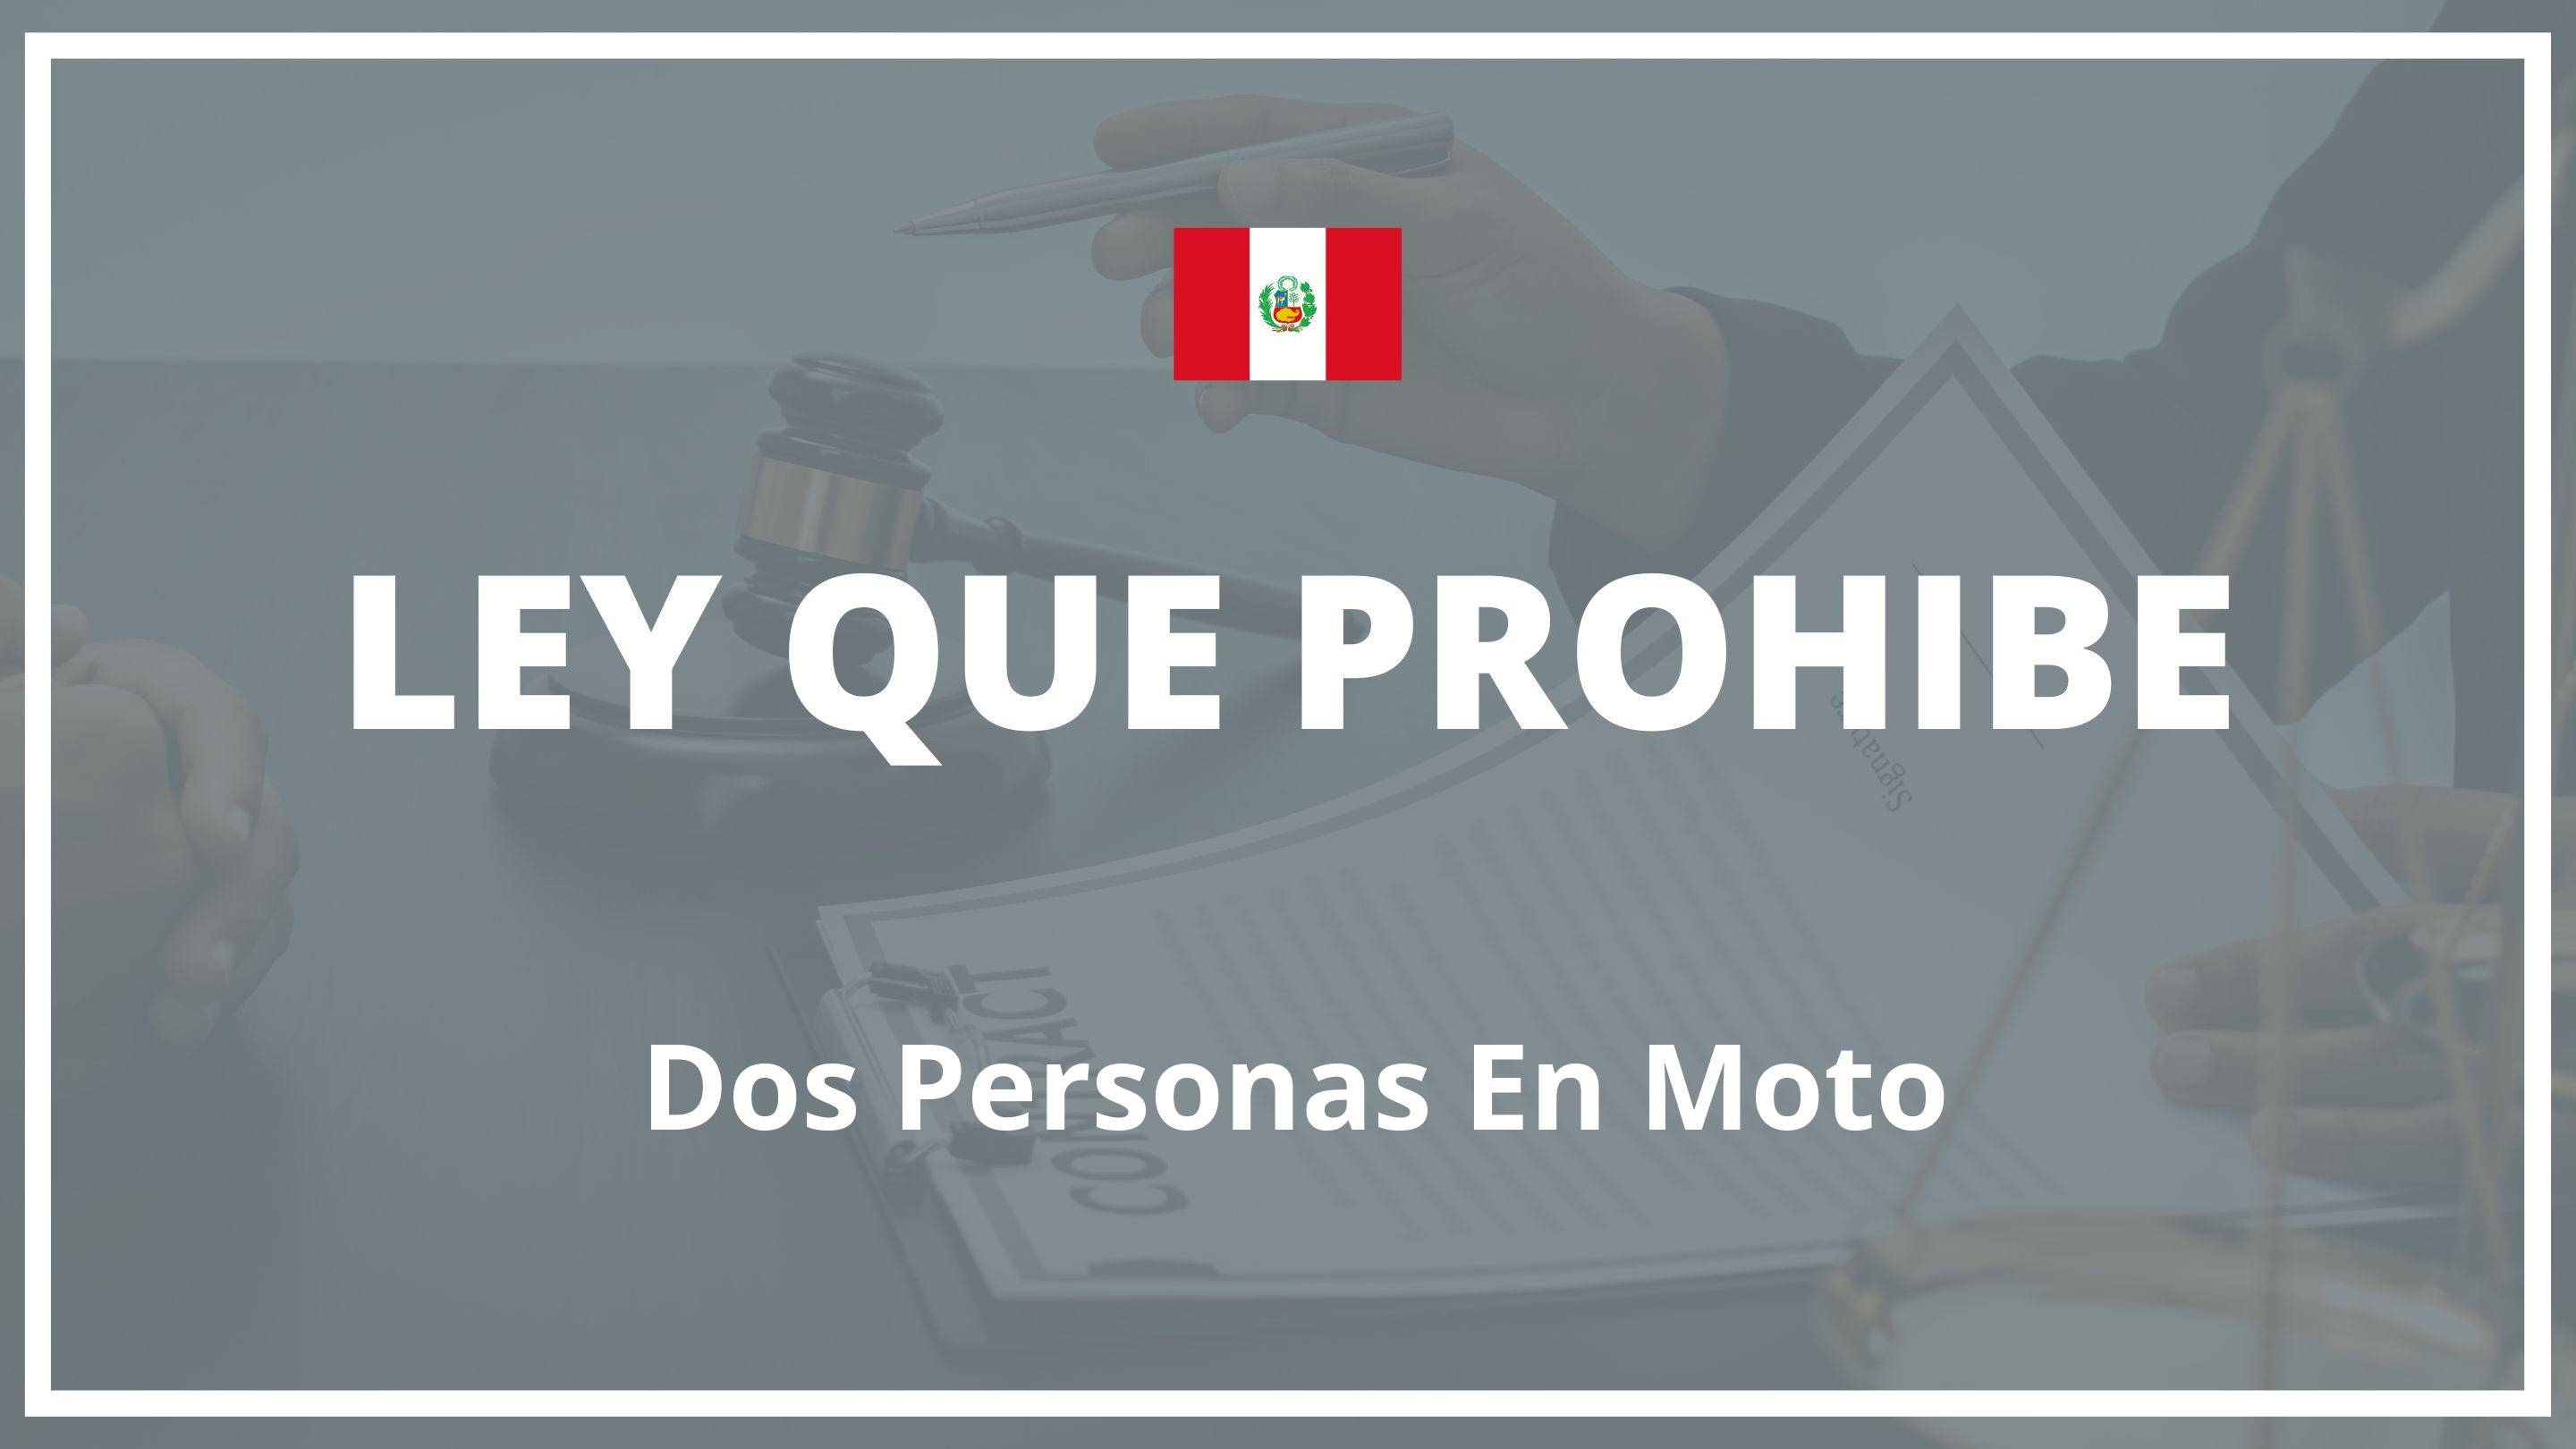 Ley que prohibe dos personas en moto Peru